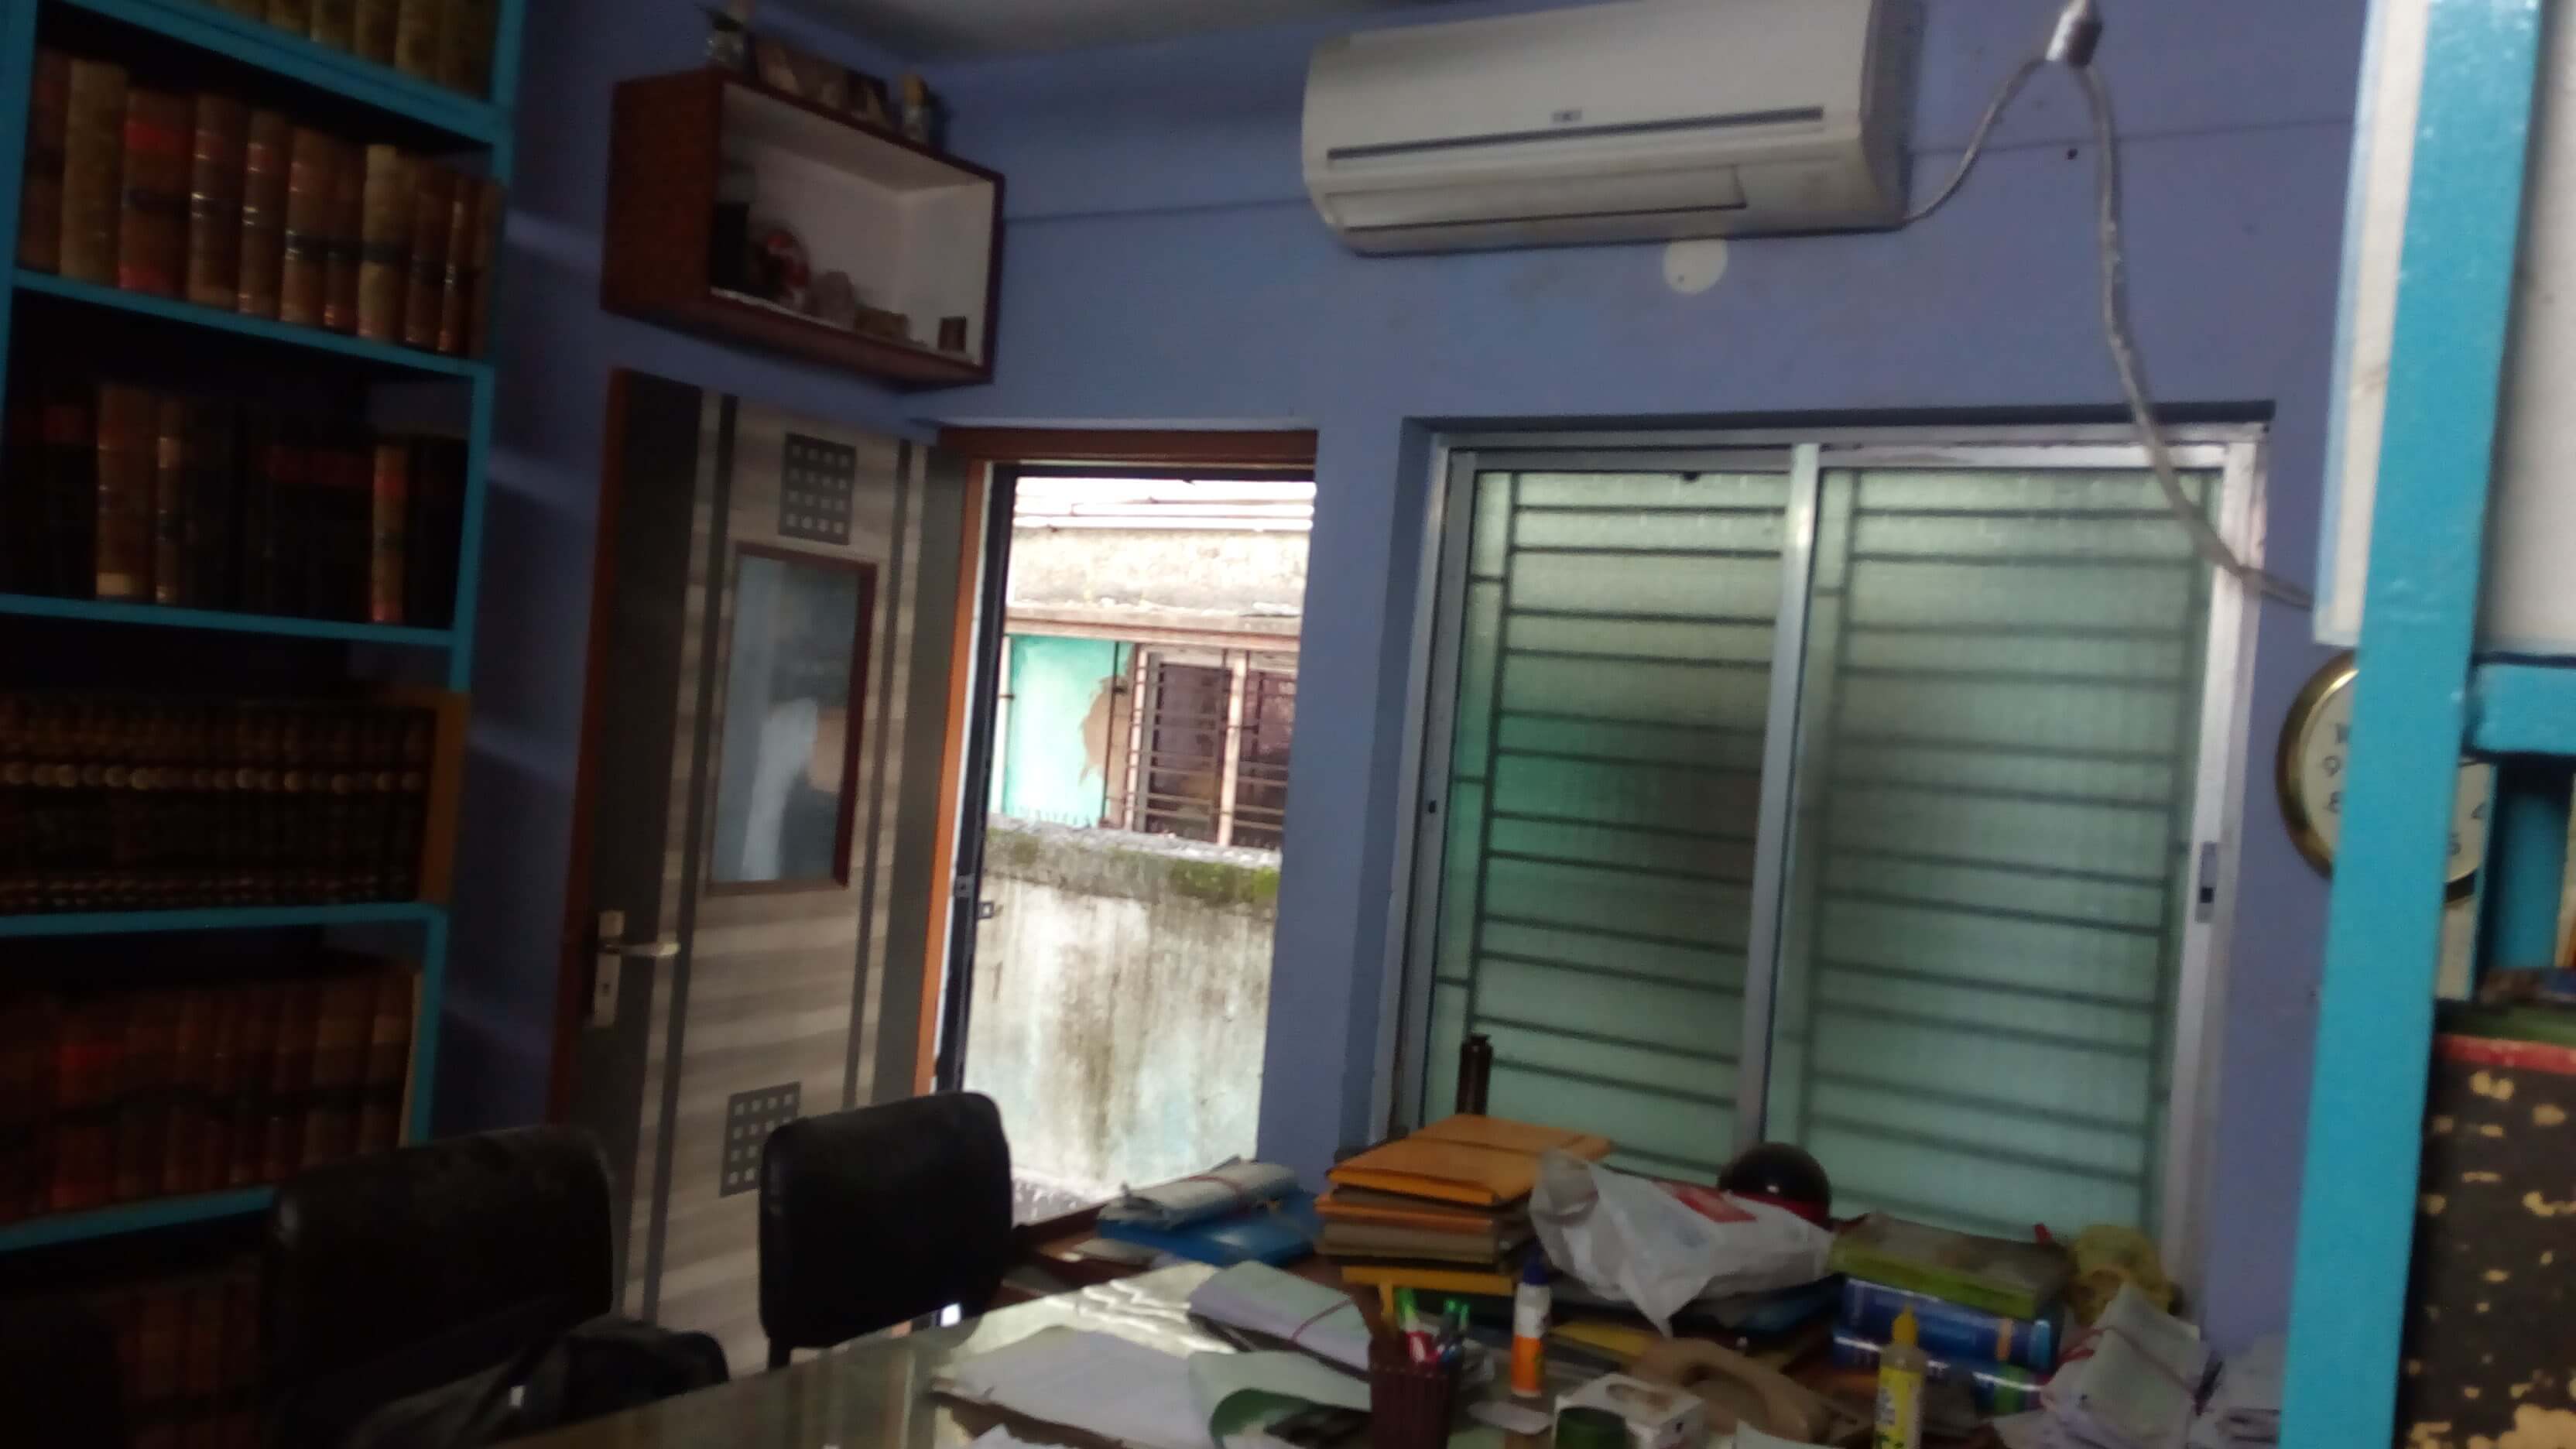 Office For Rent in Dum Dum Kolkata (Id: 19430)